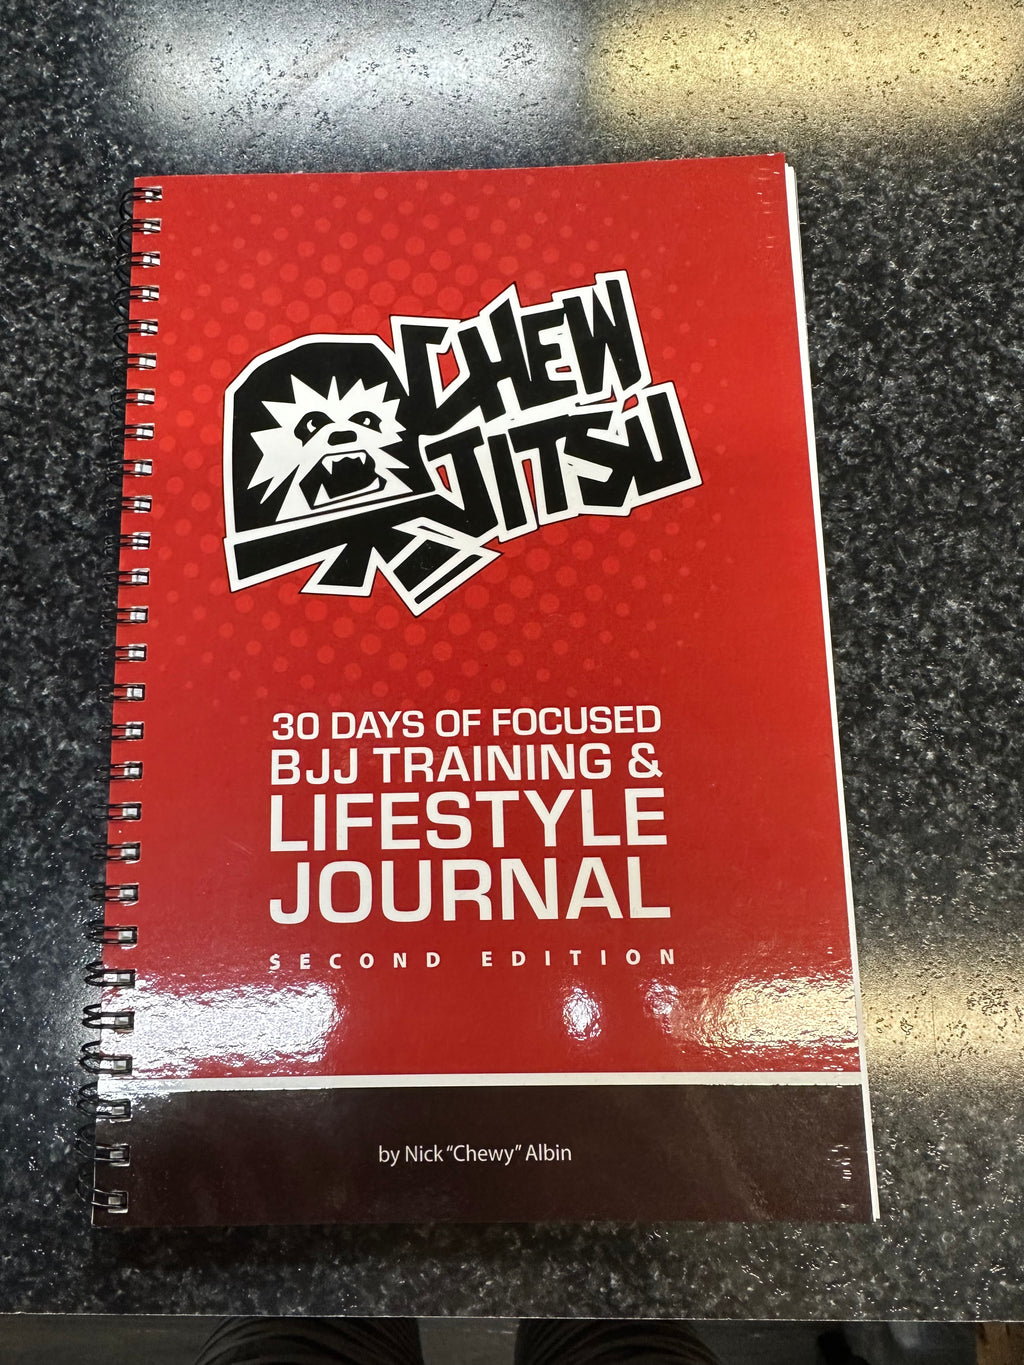 ChewJitsu Lifestyle Journal